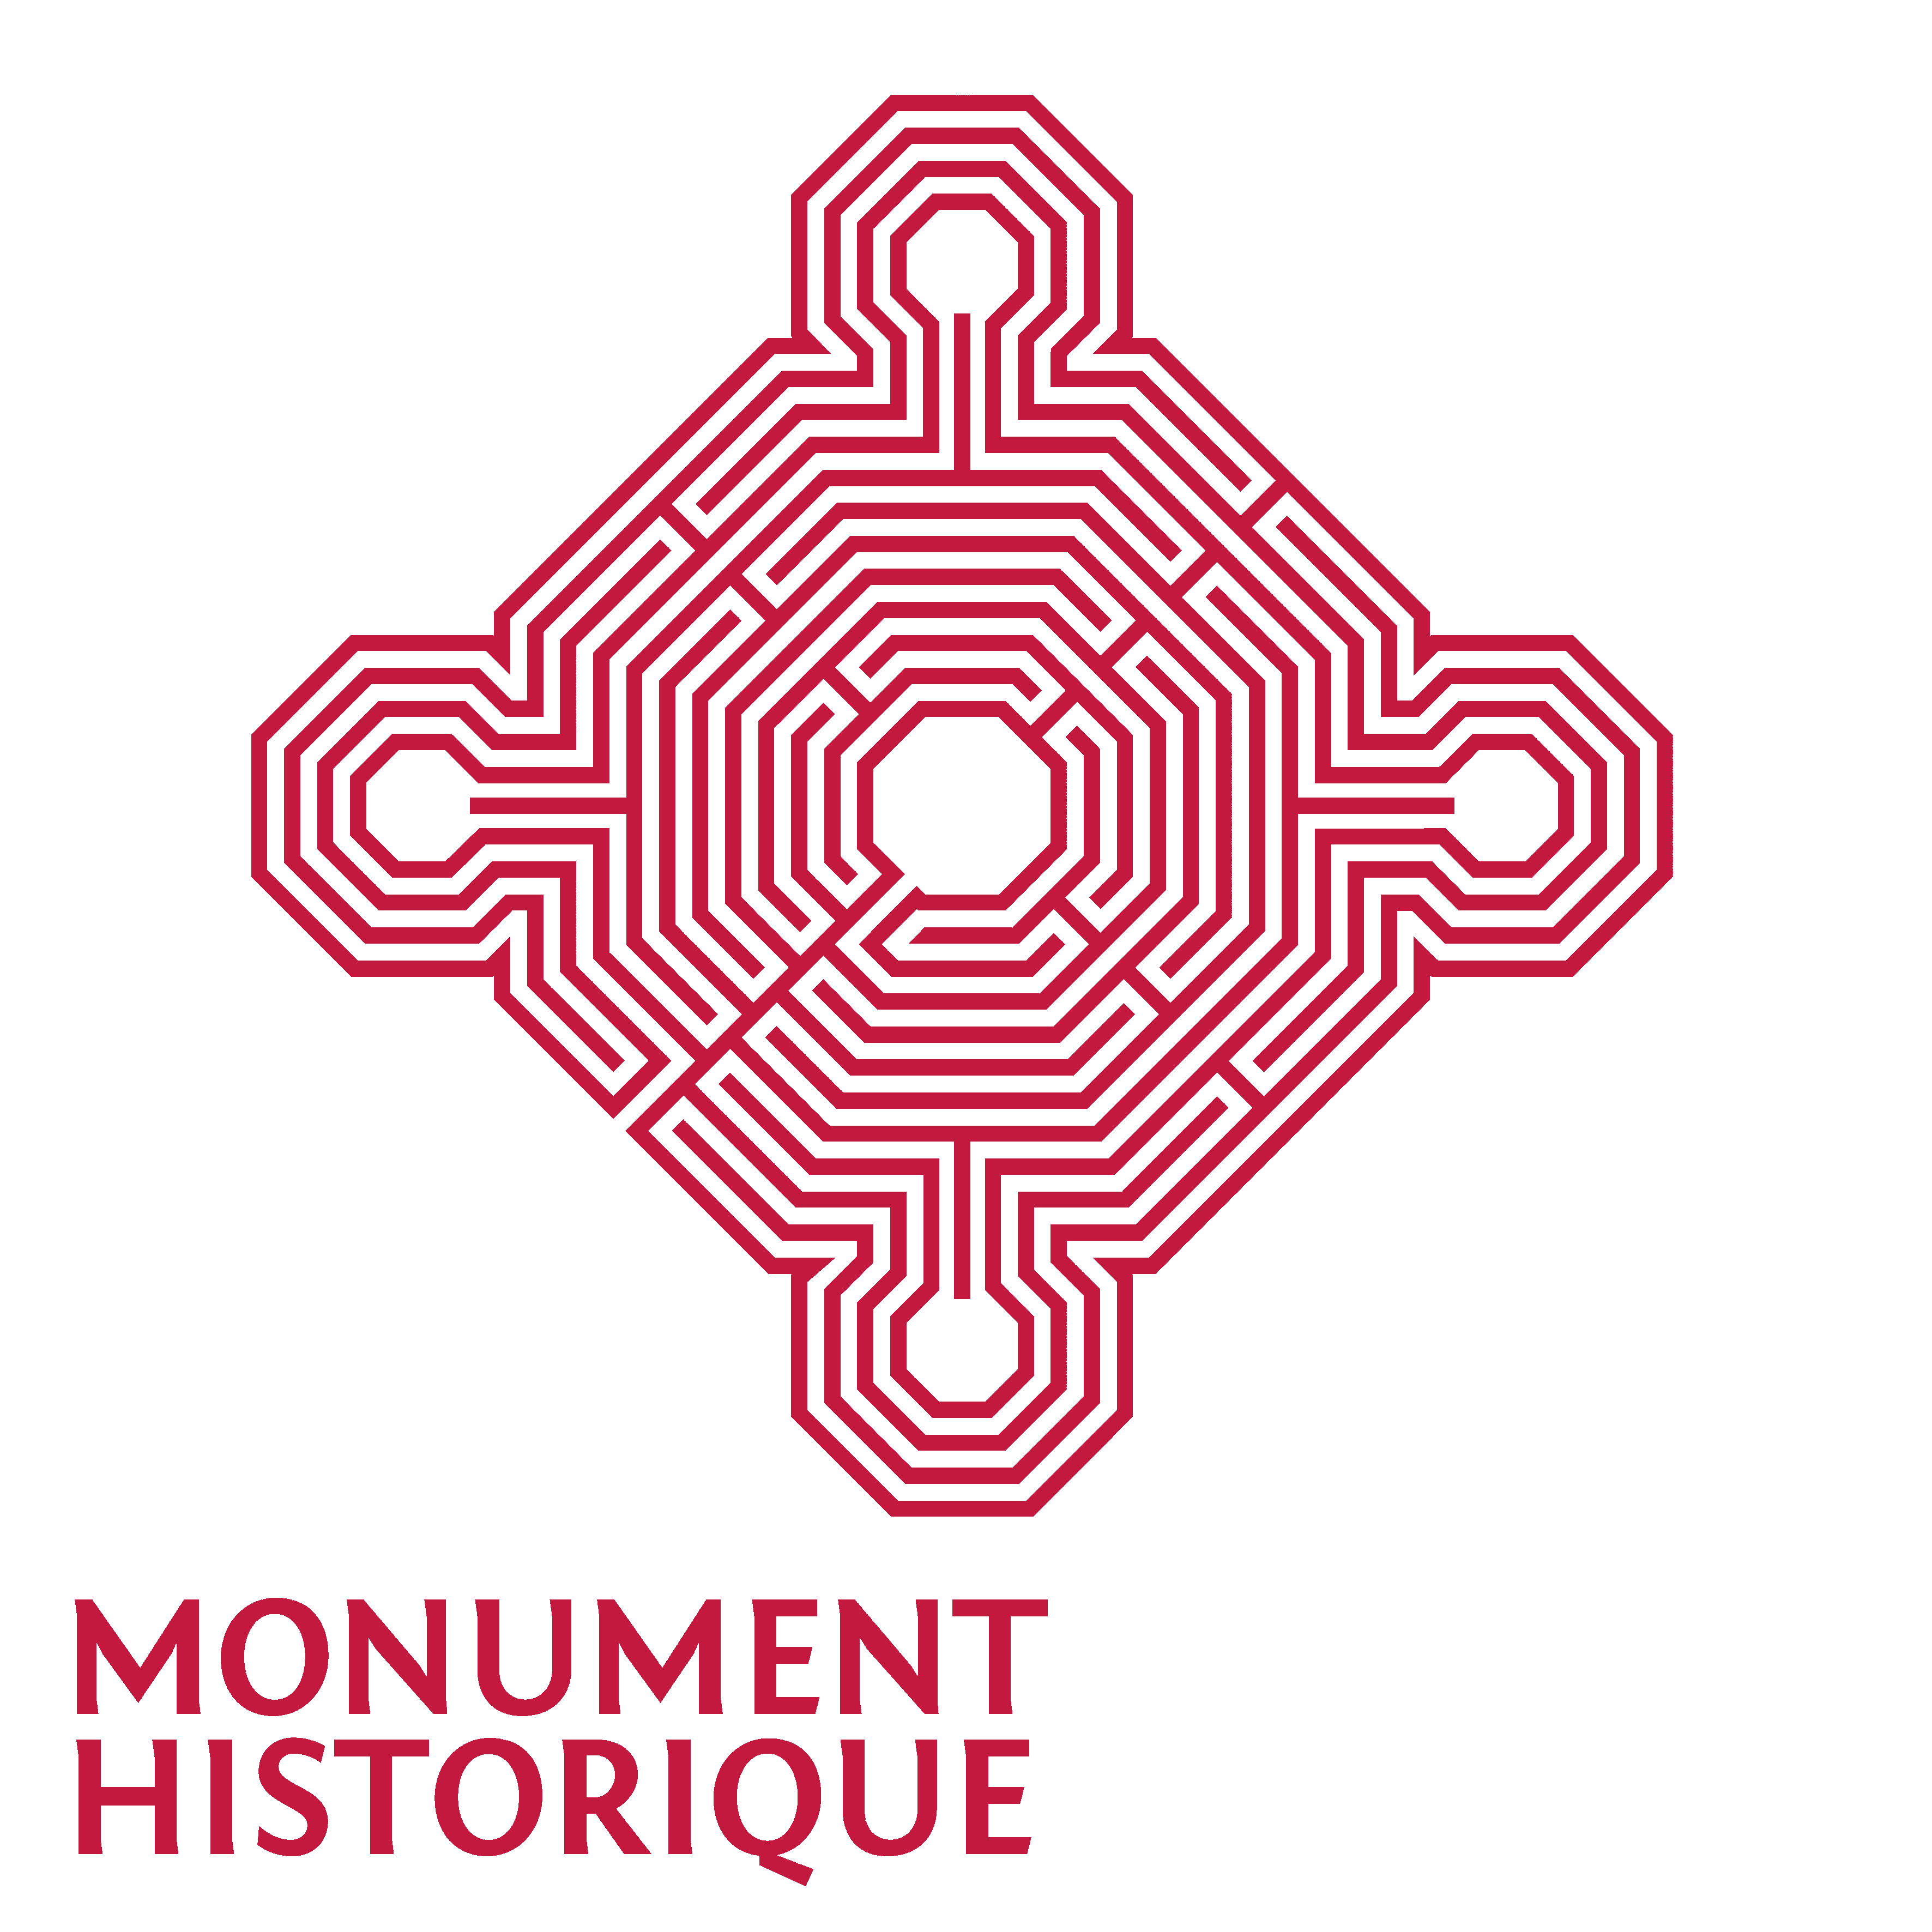 Plaque-Monument-historique-2017-chateau de Balzac